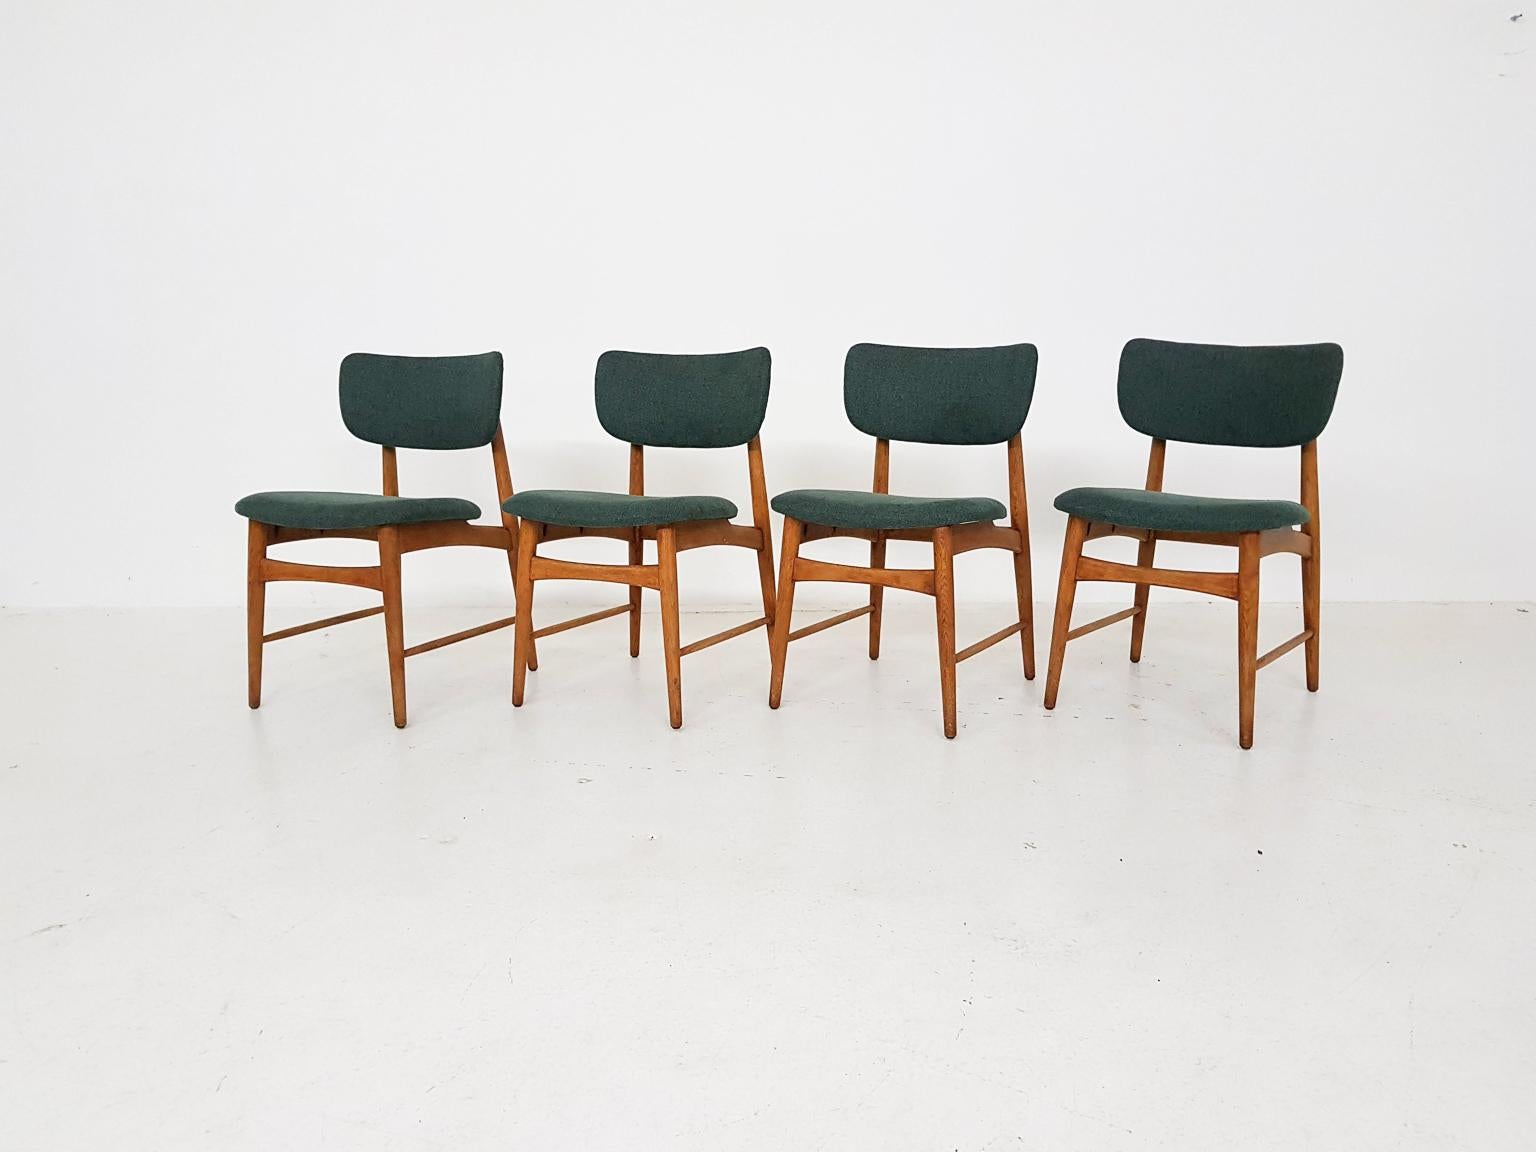 Eine schöne Reihe von Eichenstühlen mit neuen grünen Polstermöbeln. 

Wir glauben, dass es sich um einen Entwurf des niederländischen Möbelherstellers Bovenkamp aus der Mitte des Jahrhunderts handelt, da das Eichengestell und die Form der